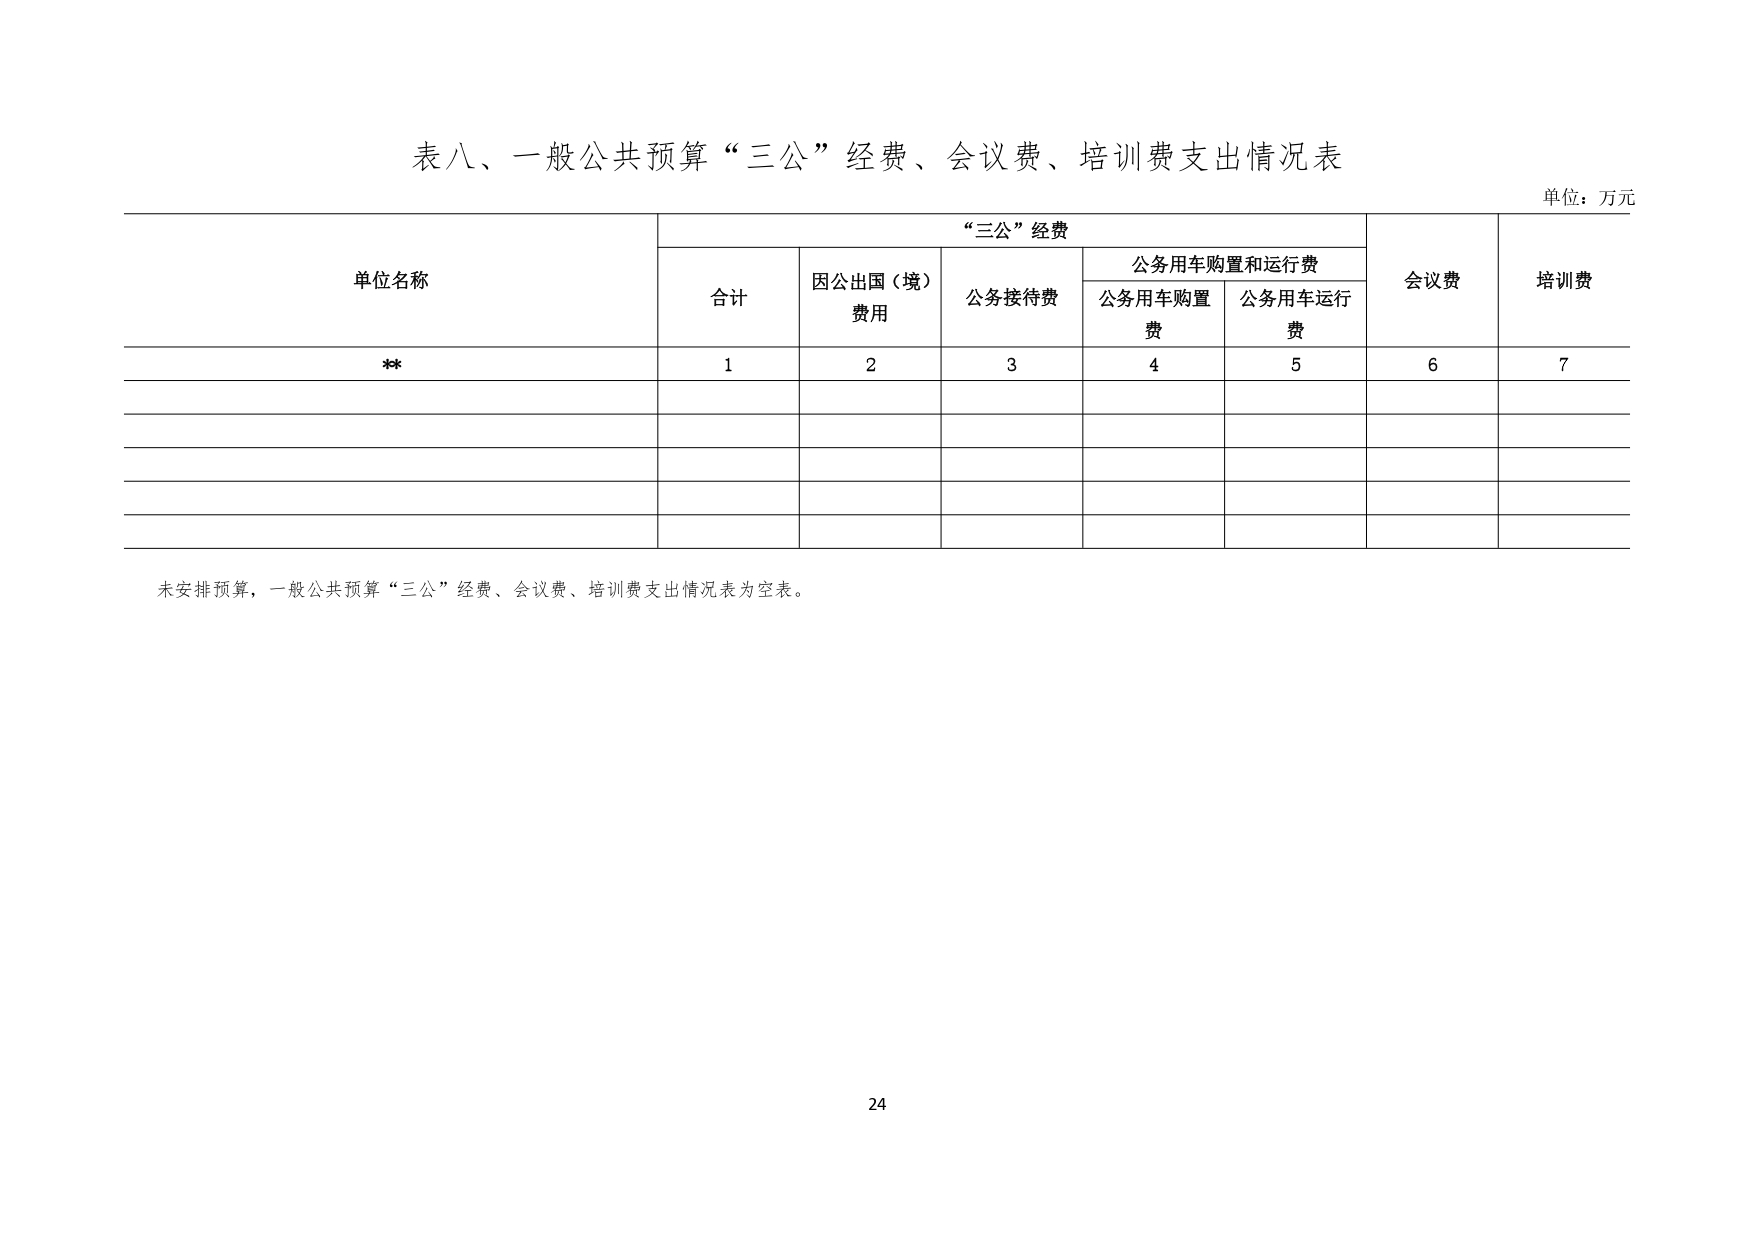 甘肃省广播电视学校2023年单位预算公开报告_page-0025.jpg